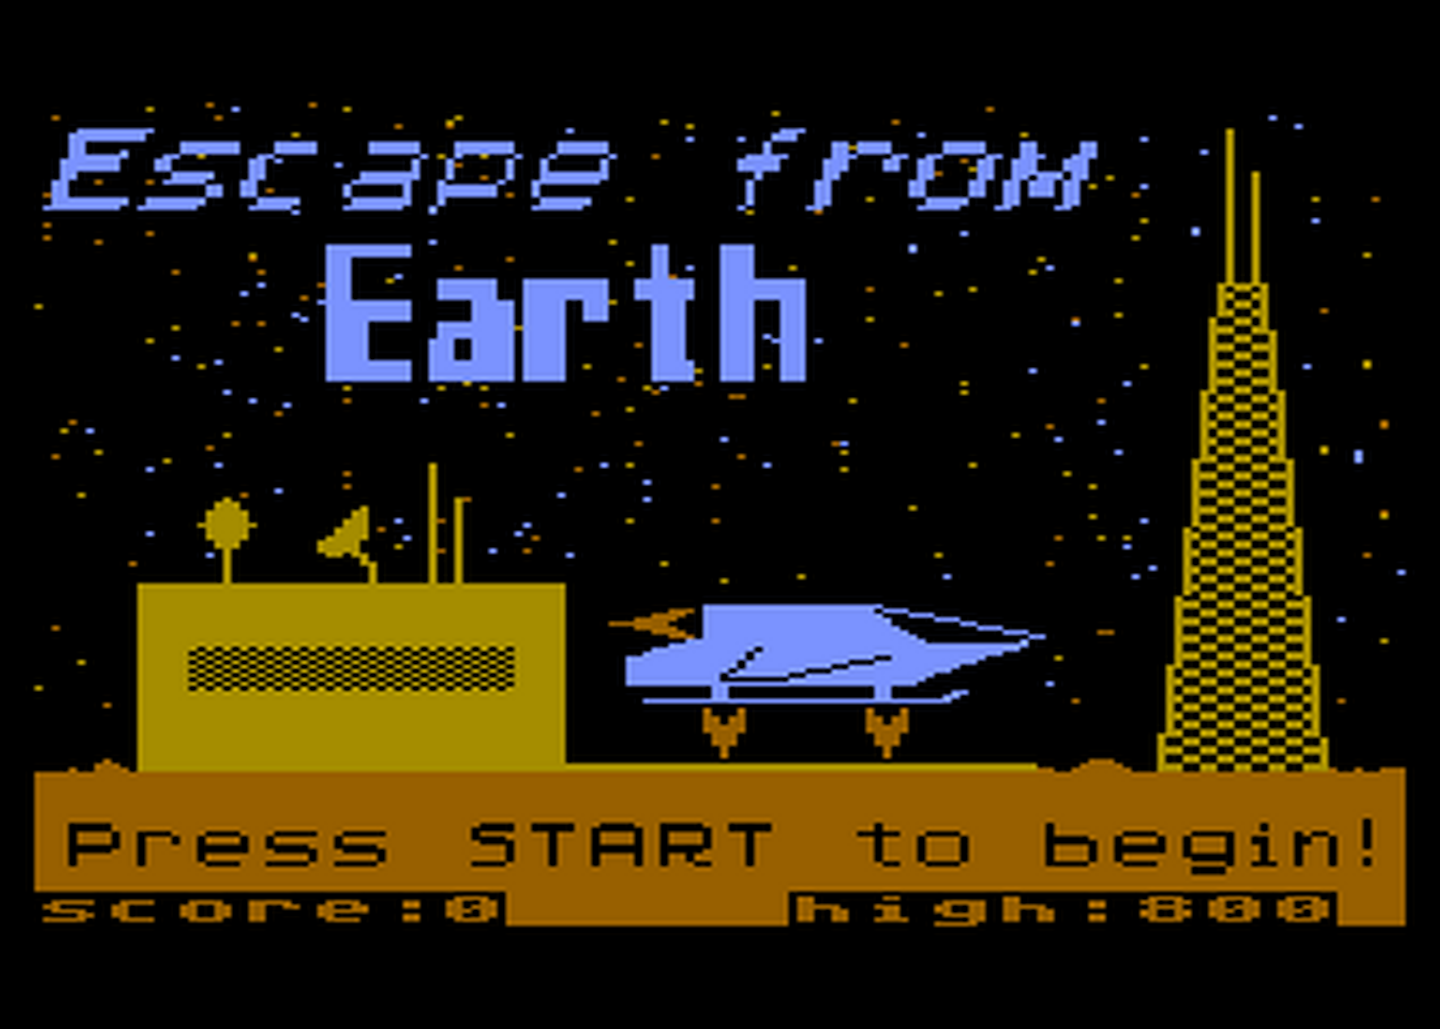 Atari GameBase Escape_From_Earth Computronic 1991